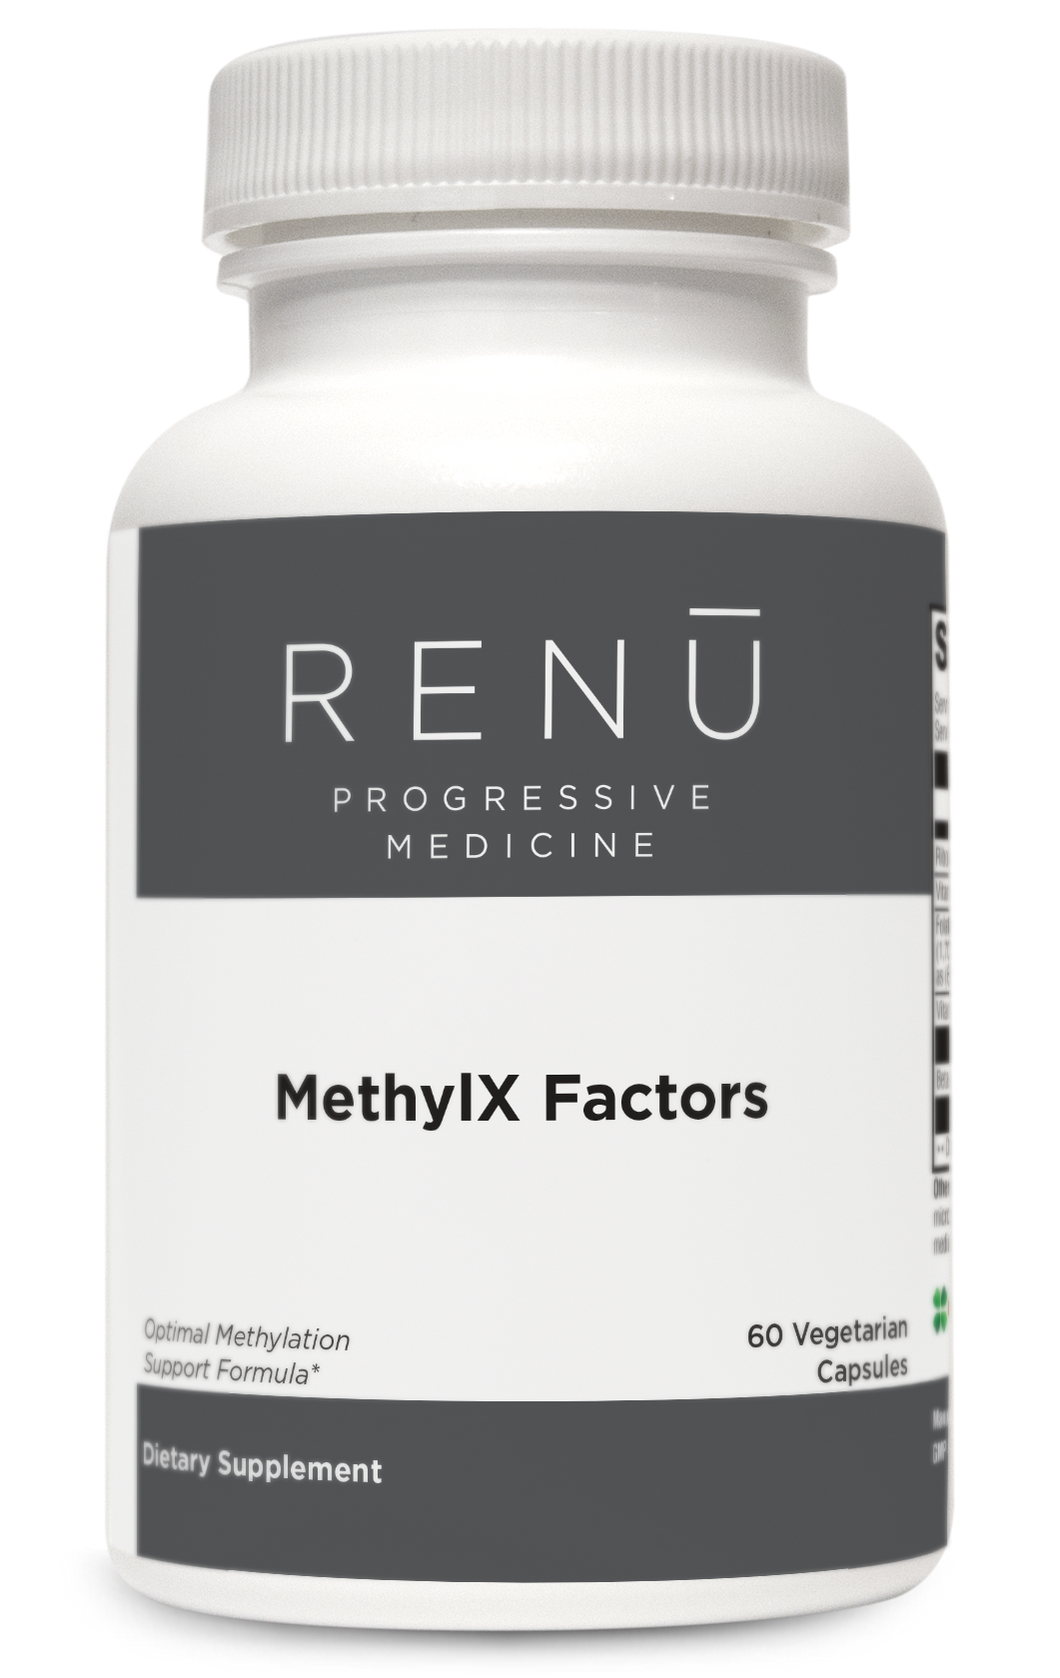 MethylX Factors